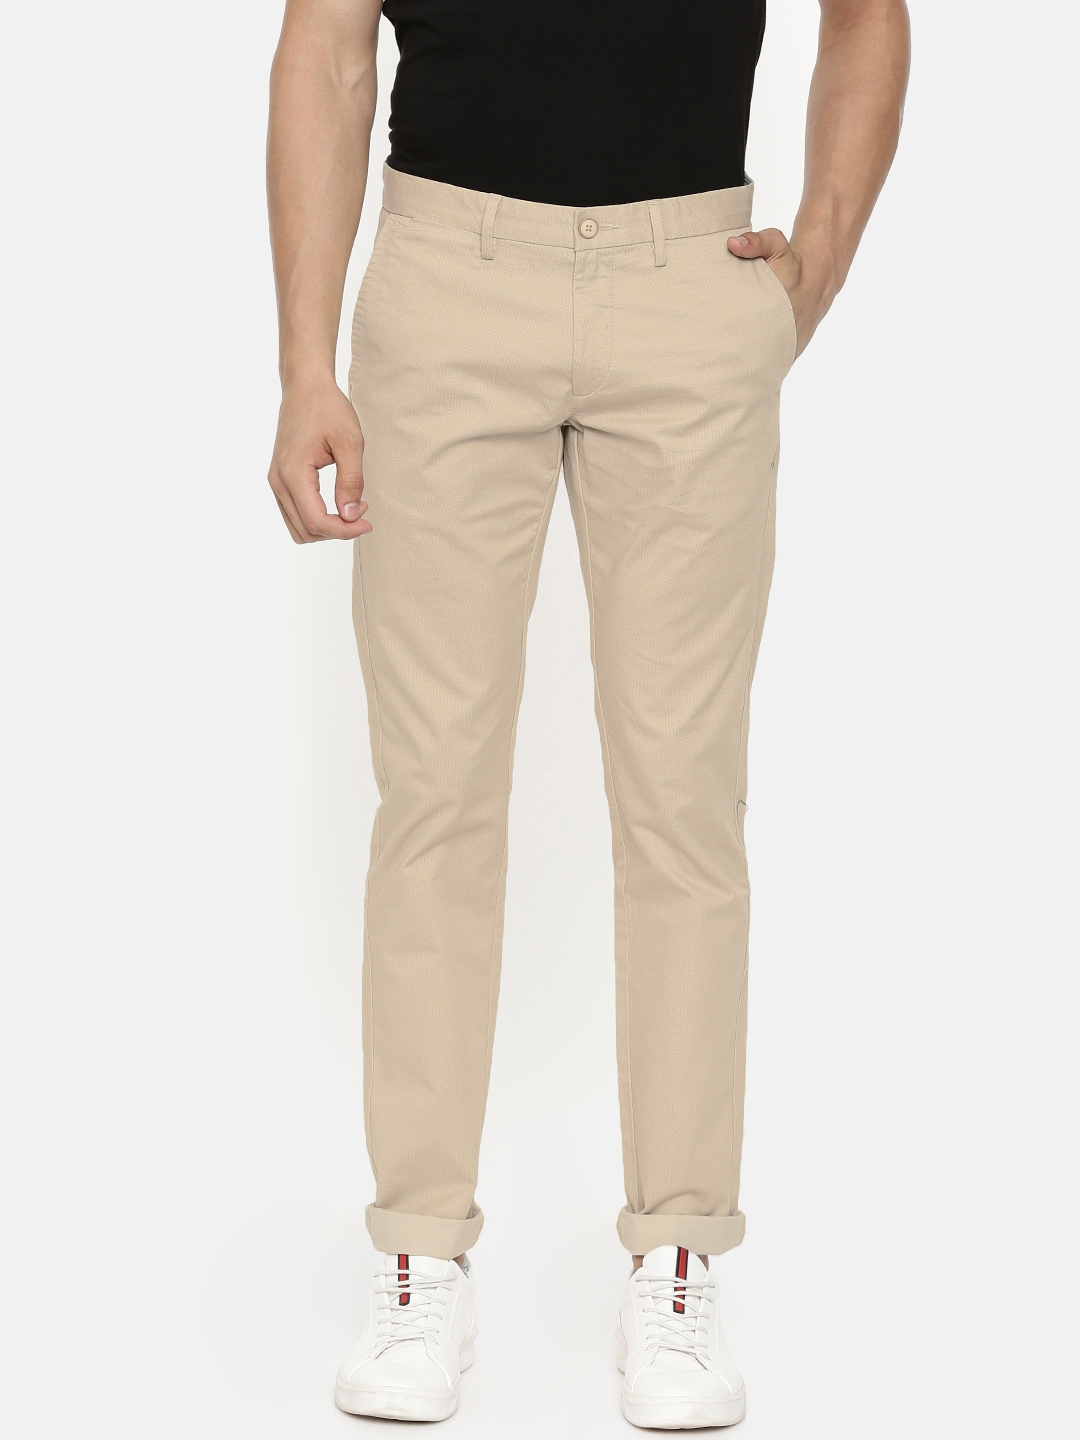 Buy U.S. Polo Assn. Men Beige Slim Fit Printed Regular Trousers ...